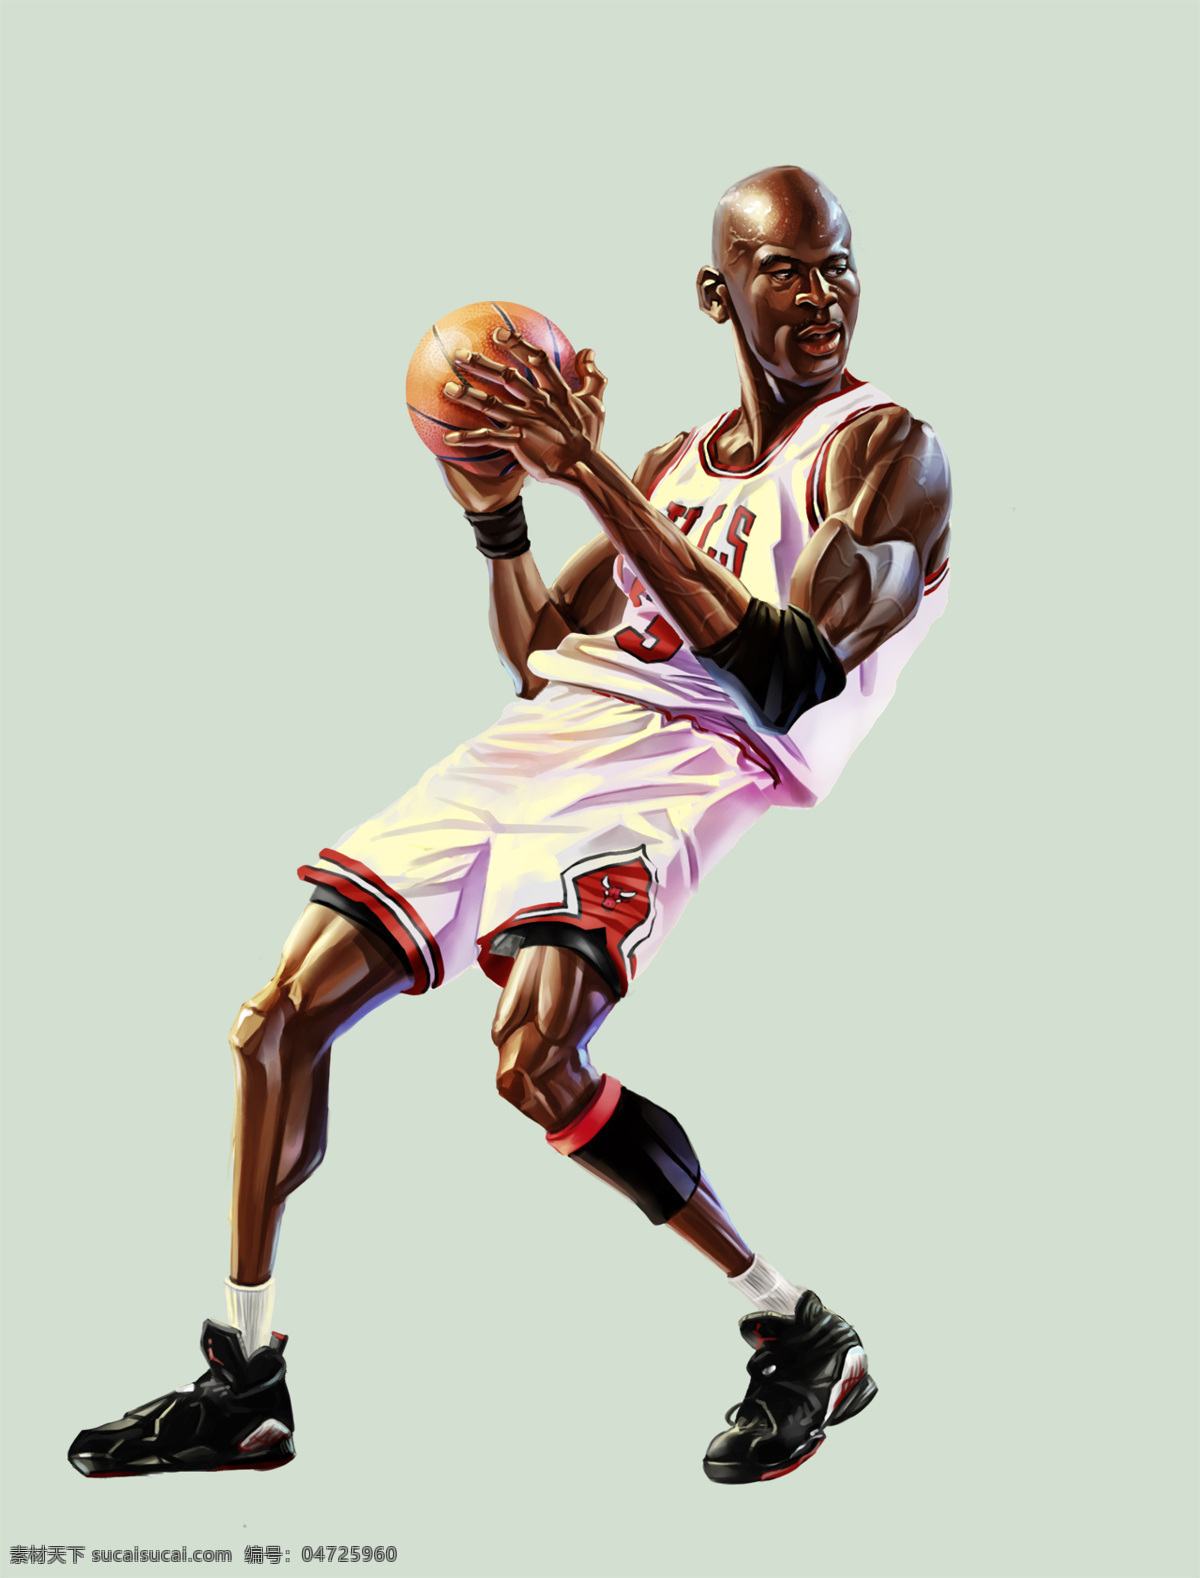 篮球 nba 背景 壁纸 动漫动画 动漫人物 乔丹 设计素材 模板下载 芝加哥 psd源文件